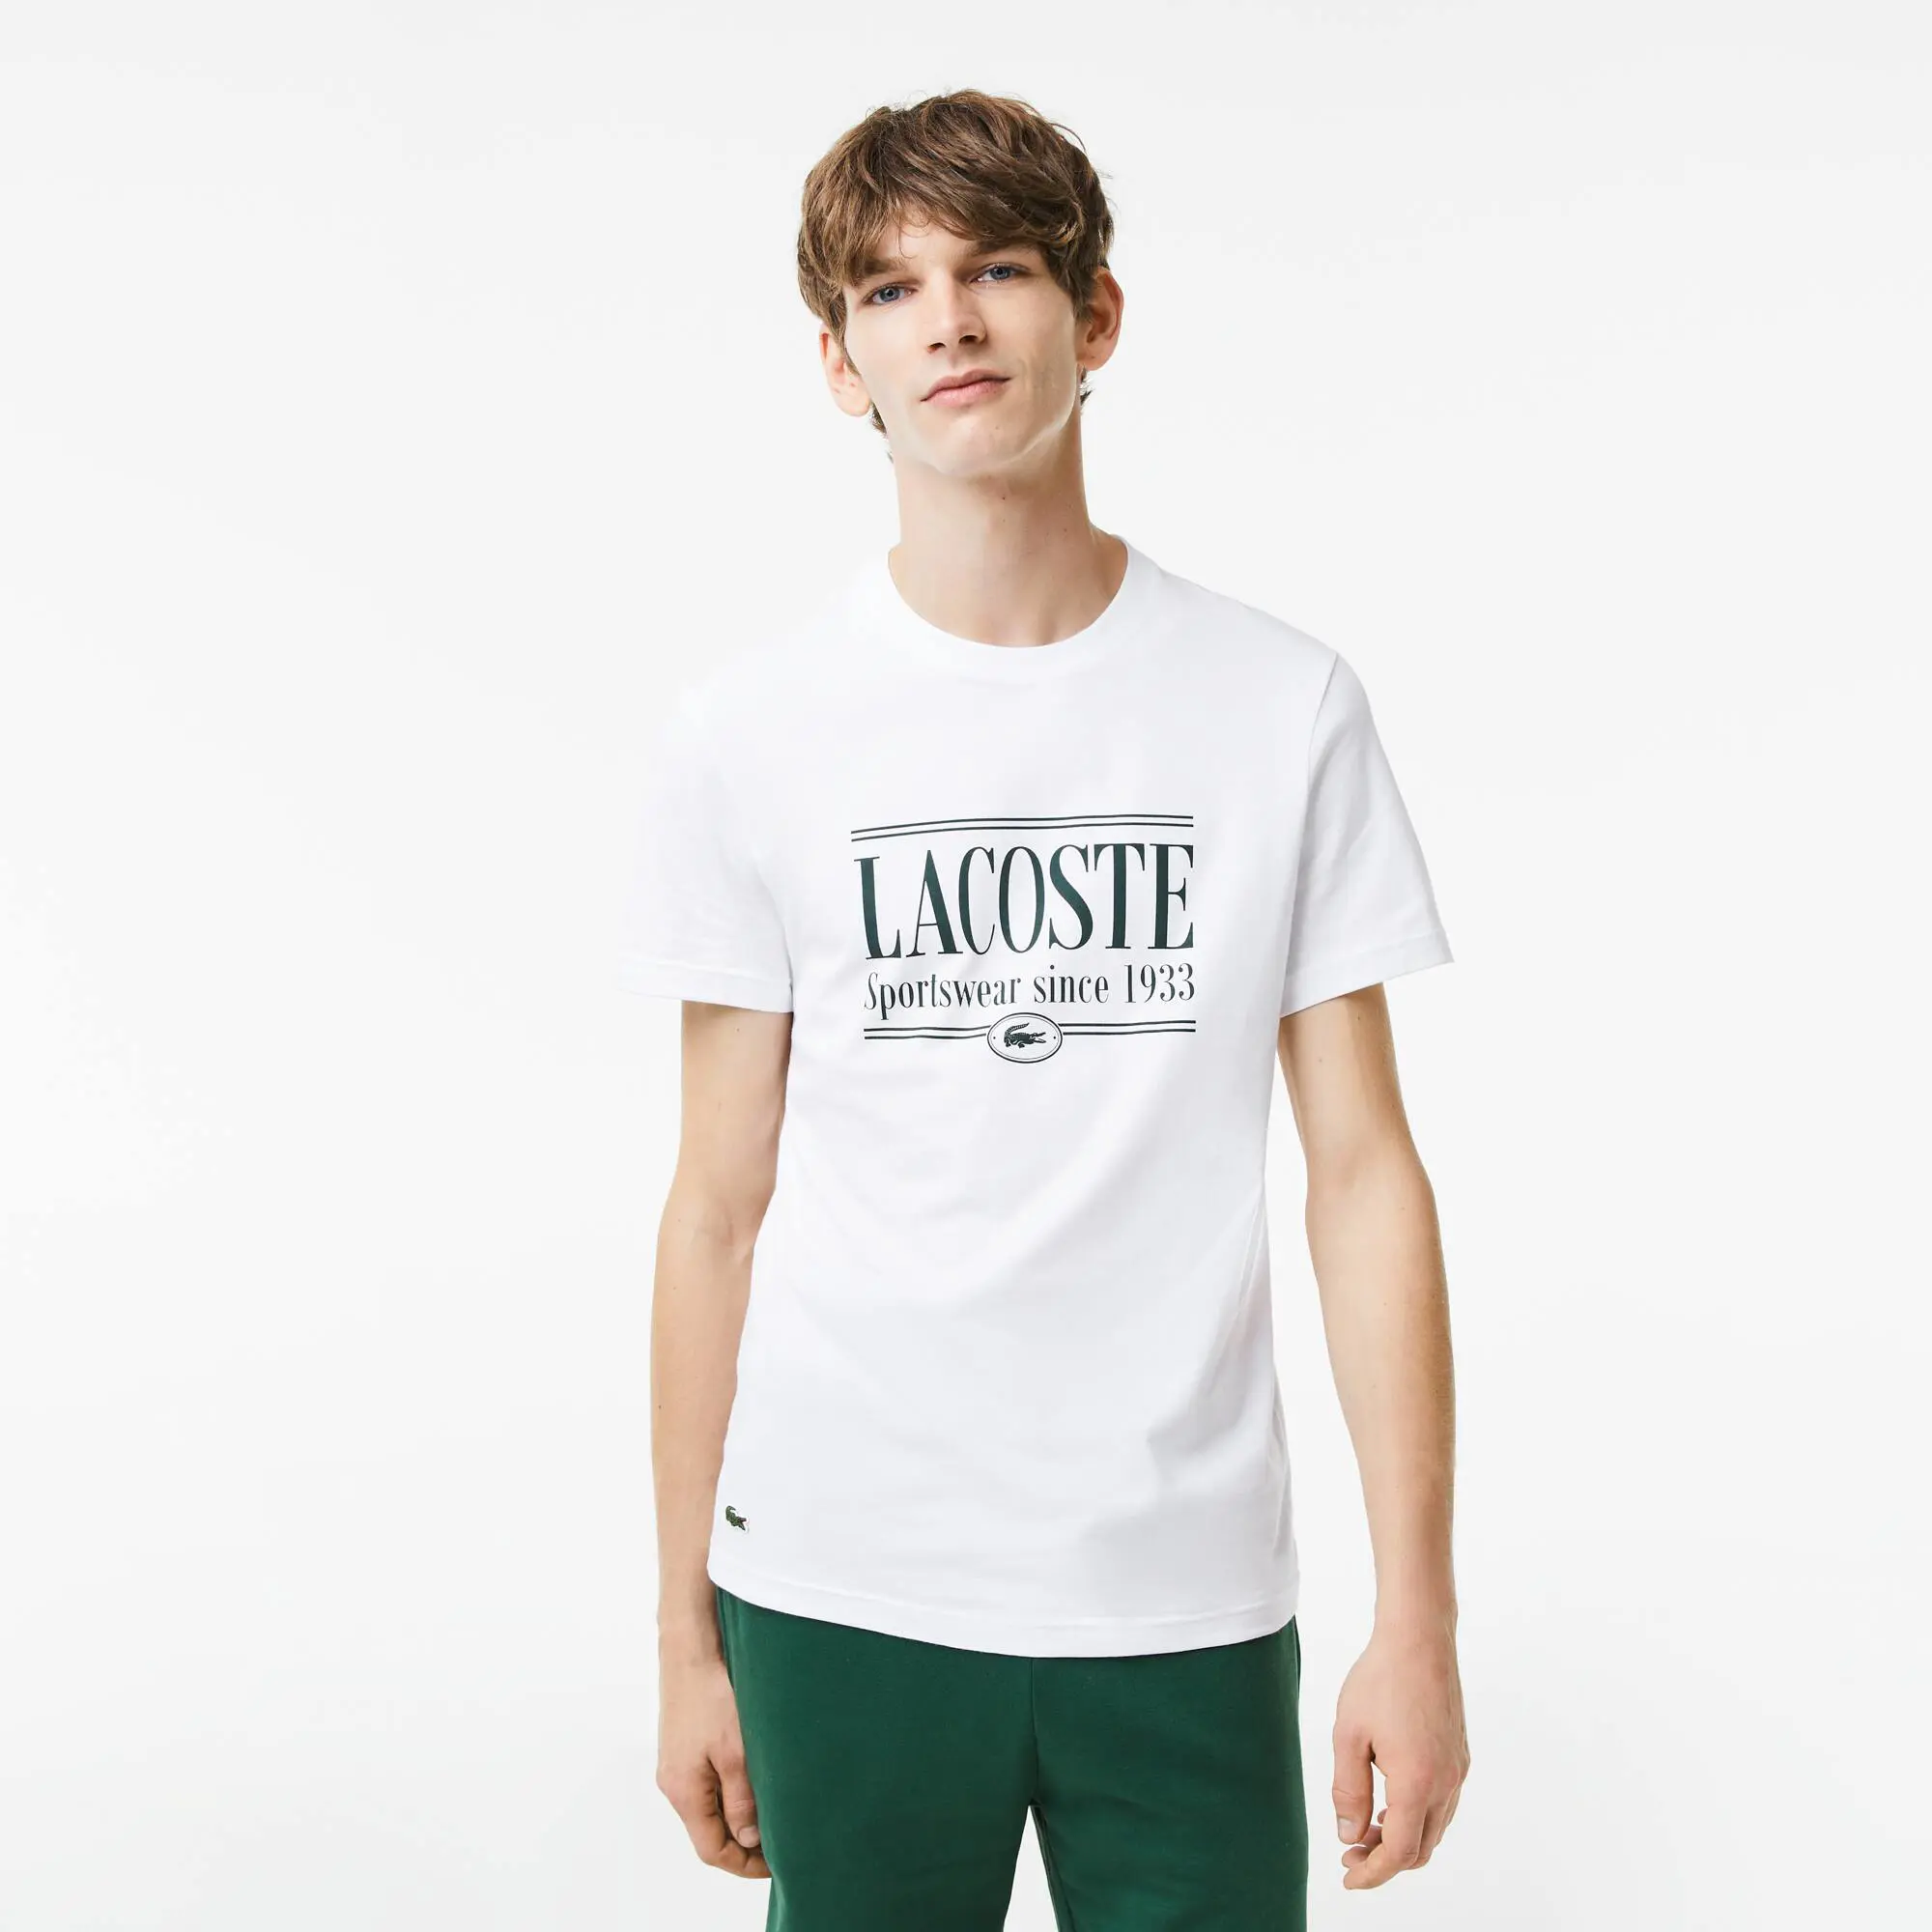 Lacoste T-shirt homme regular fit en jersey avec inscription Lacoste. 1